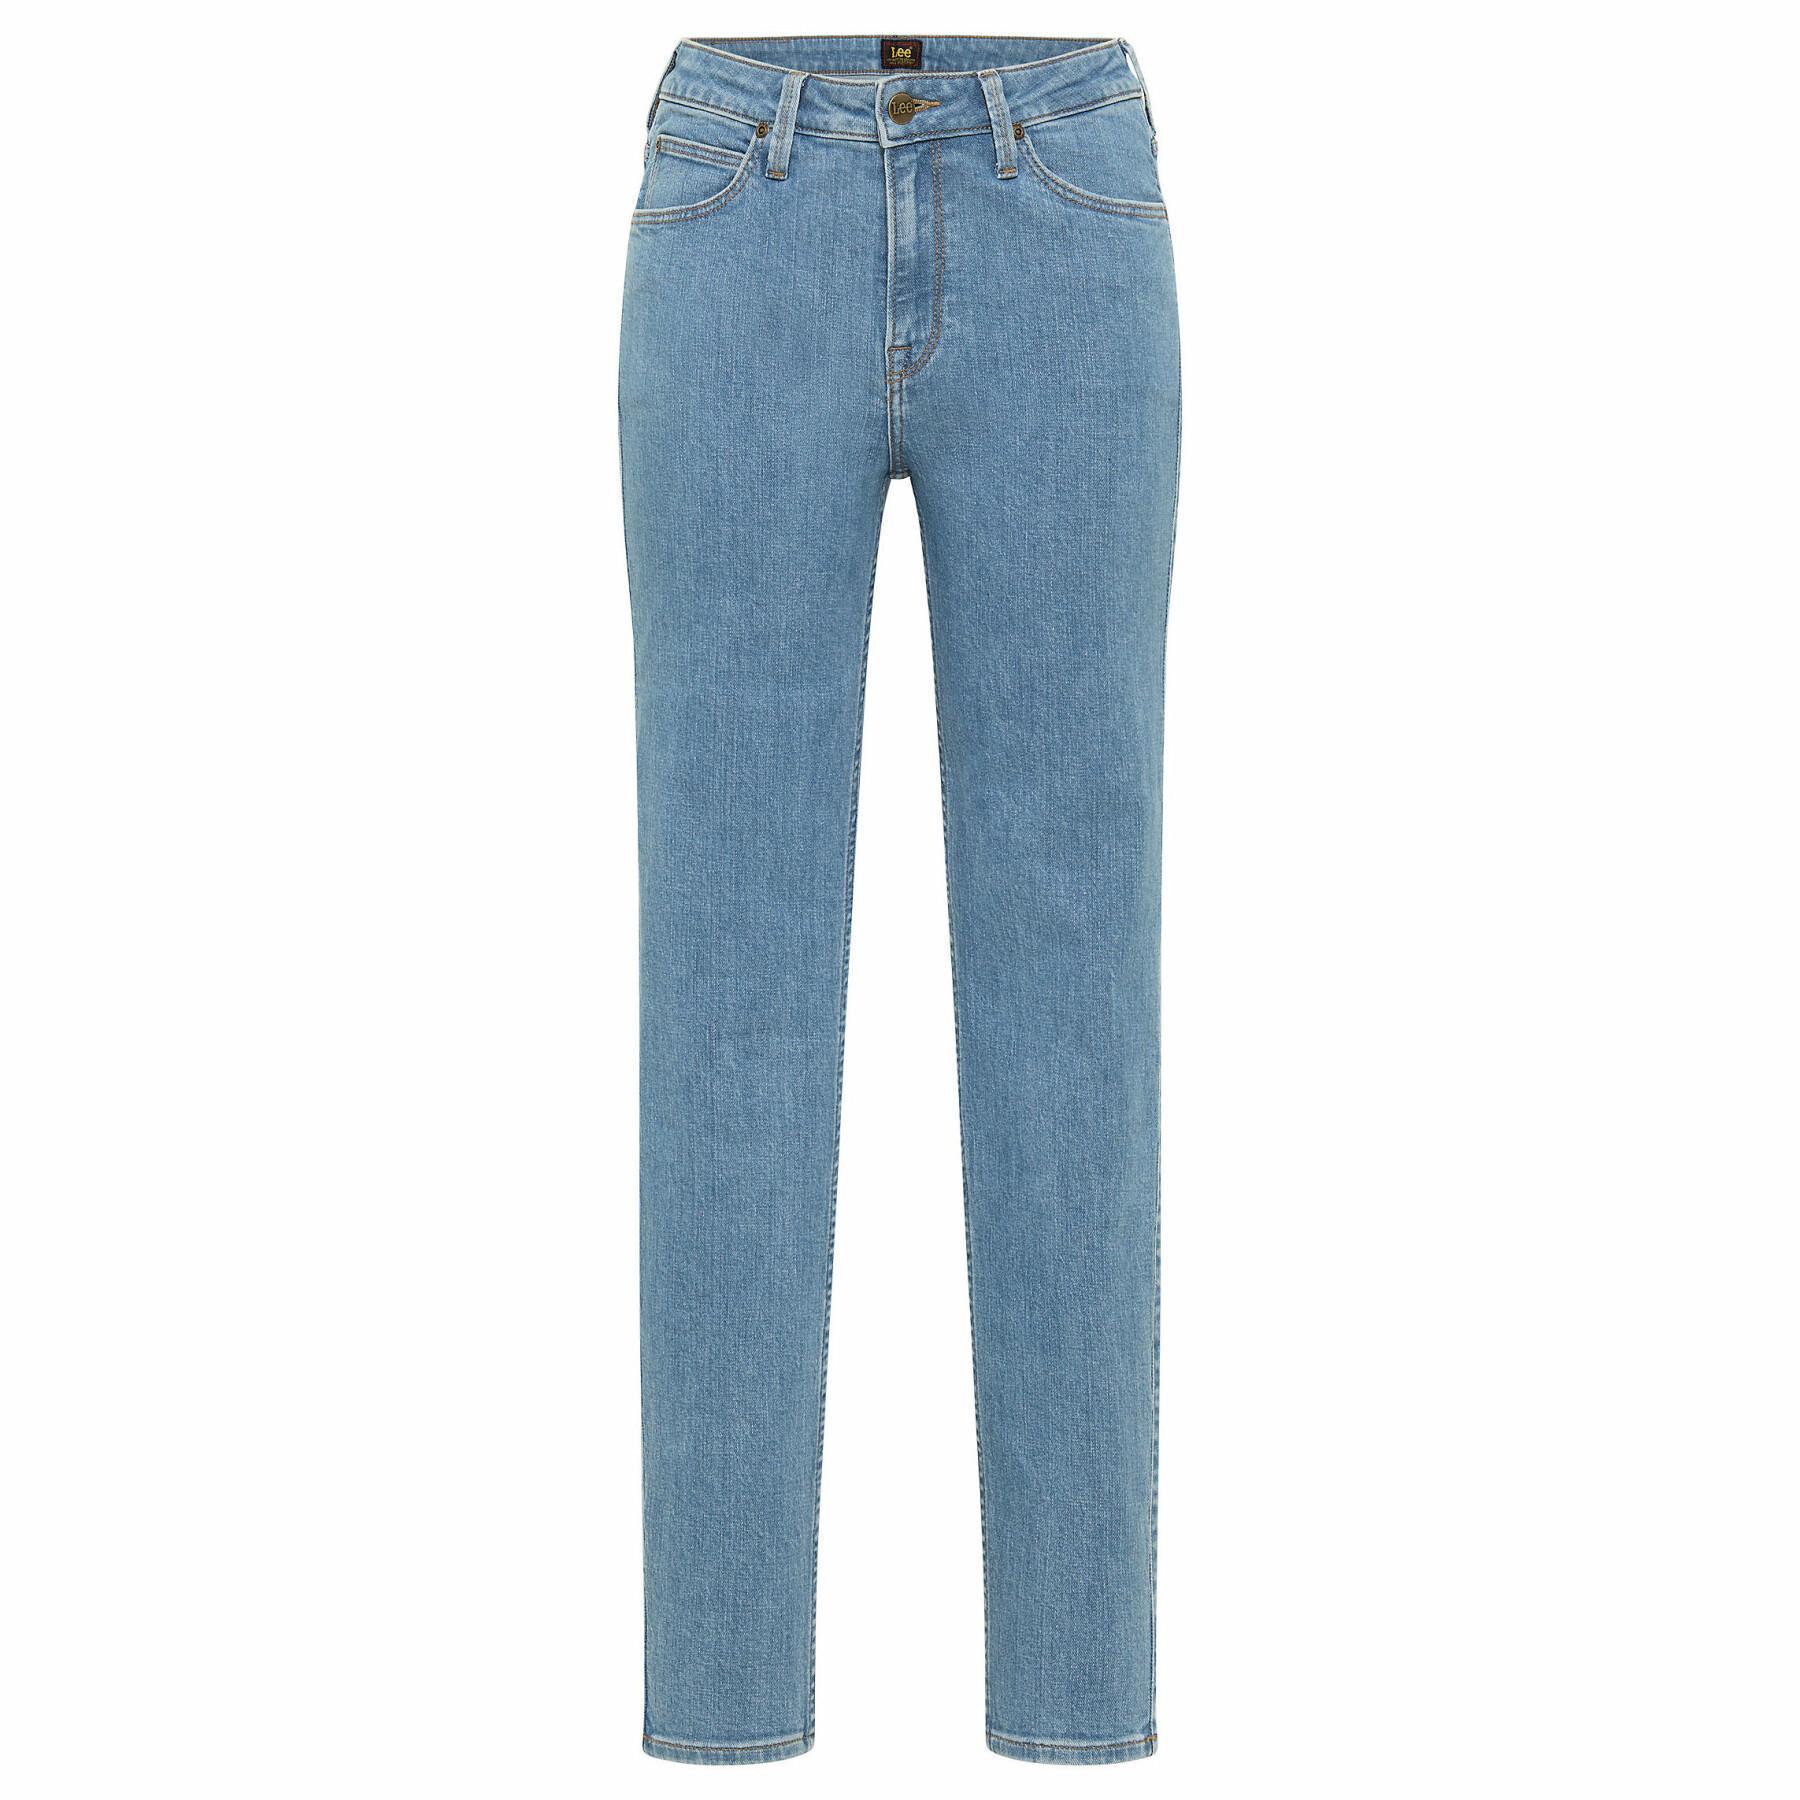 Women's high waist jeans Lee Scarlett